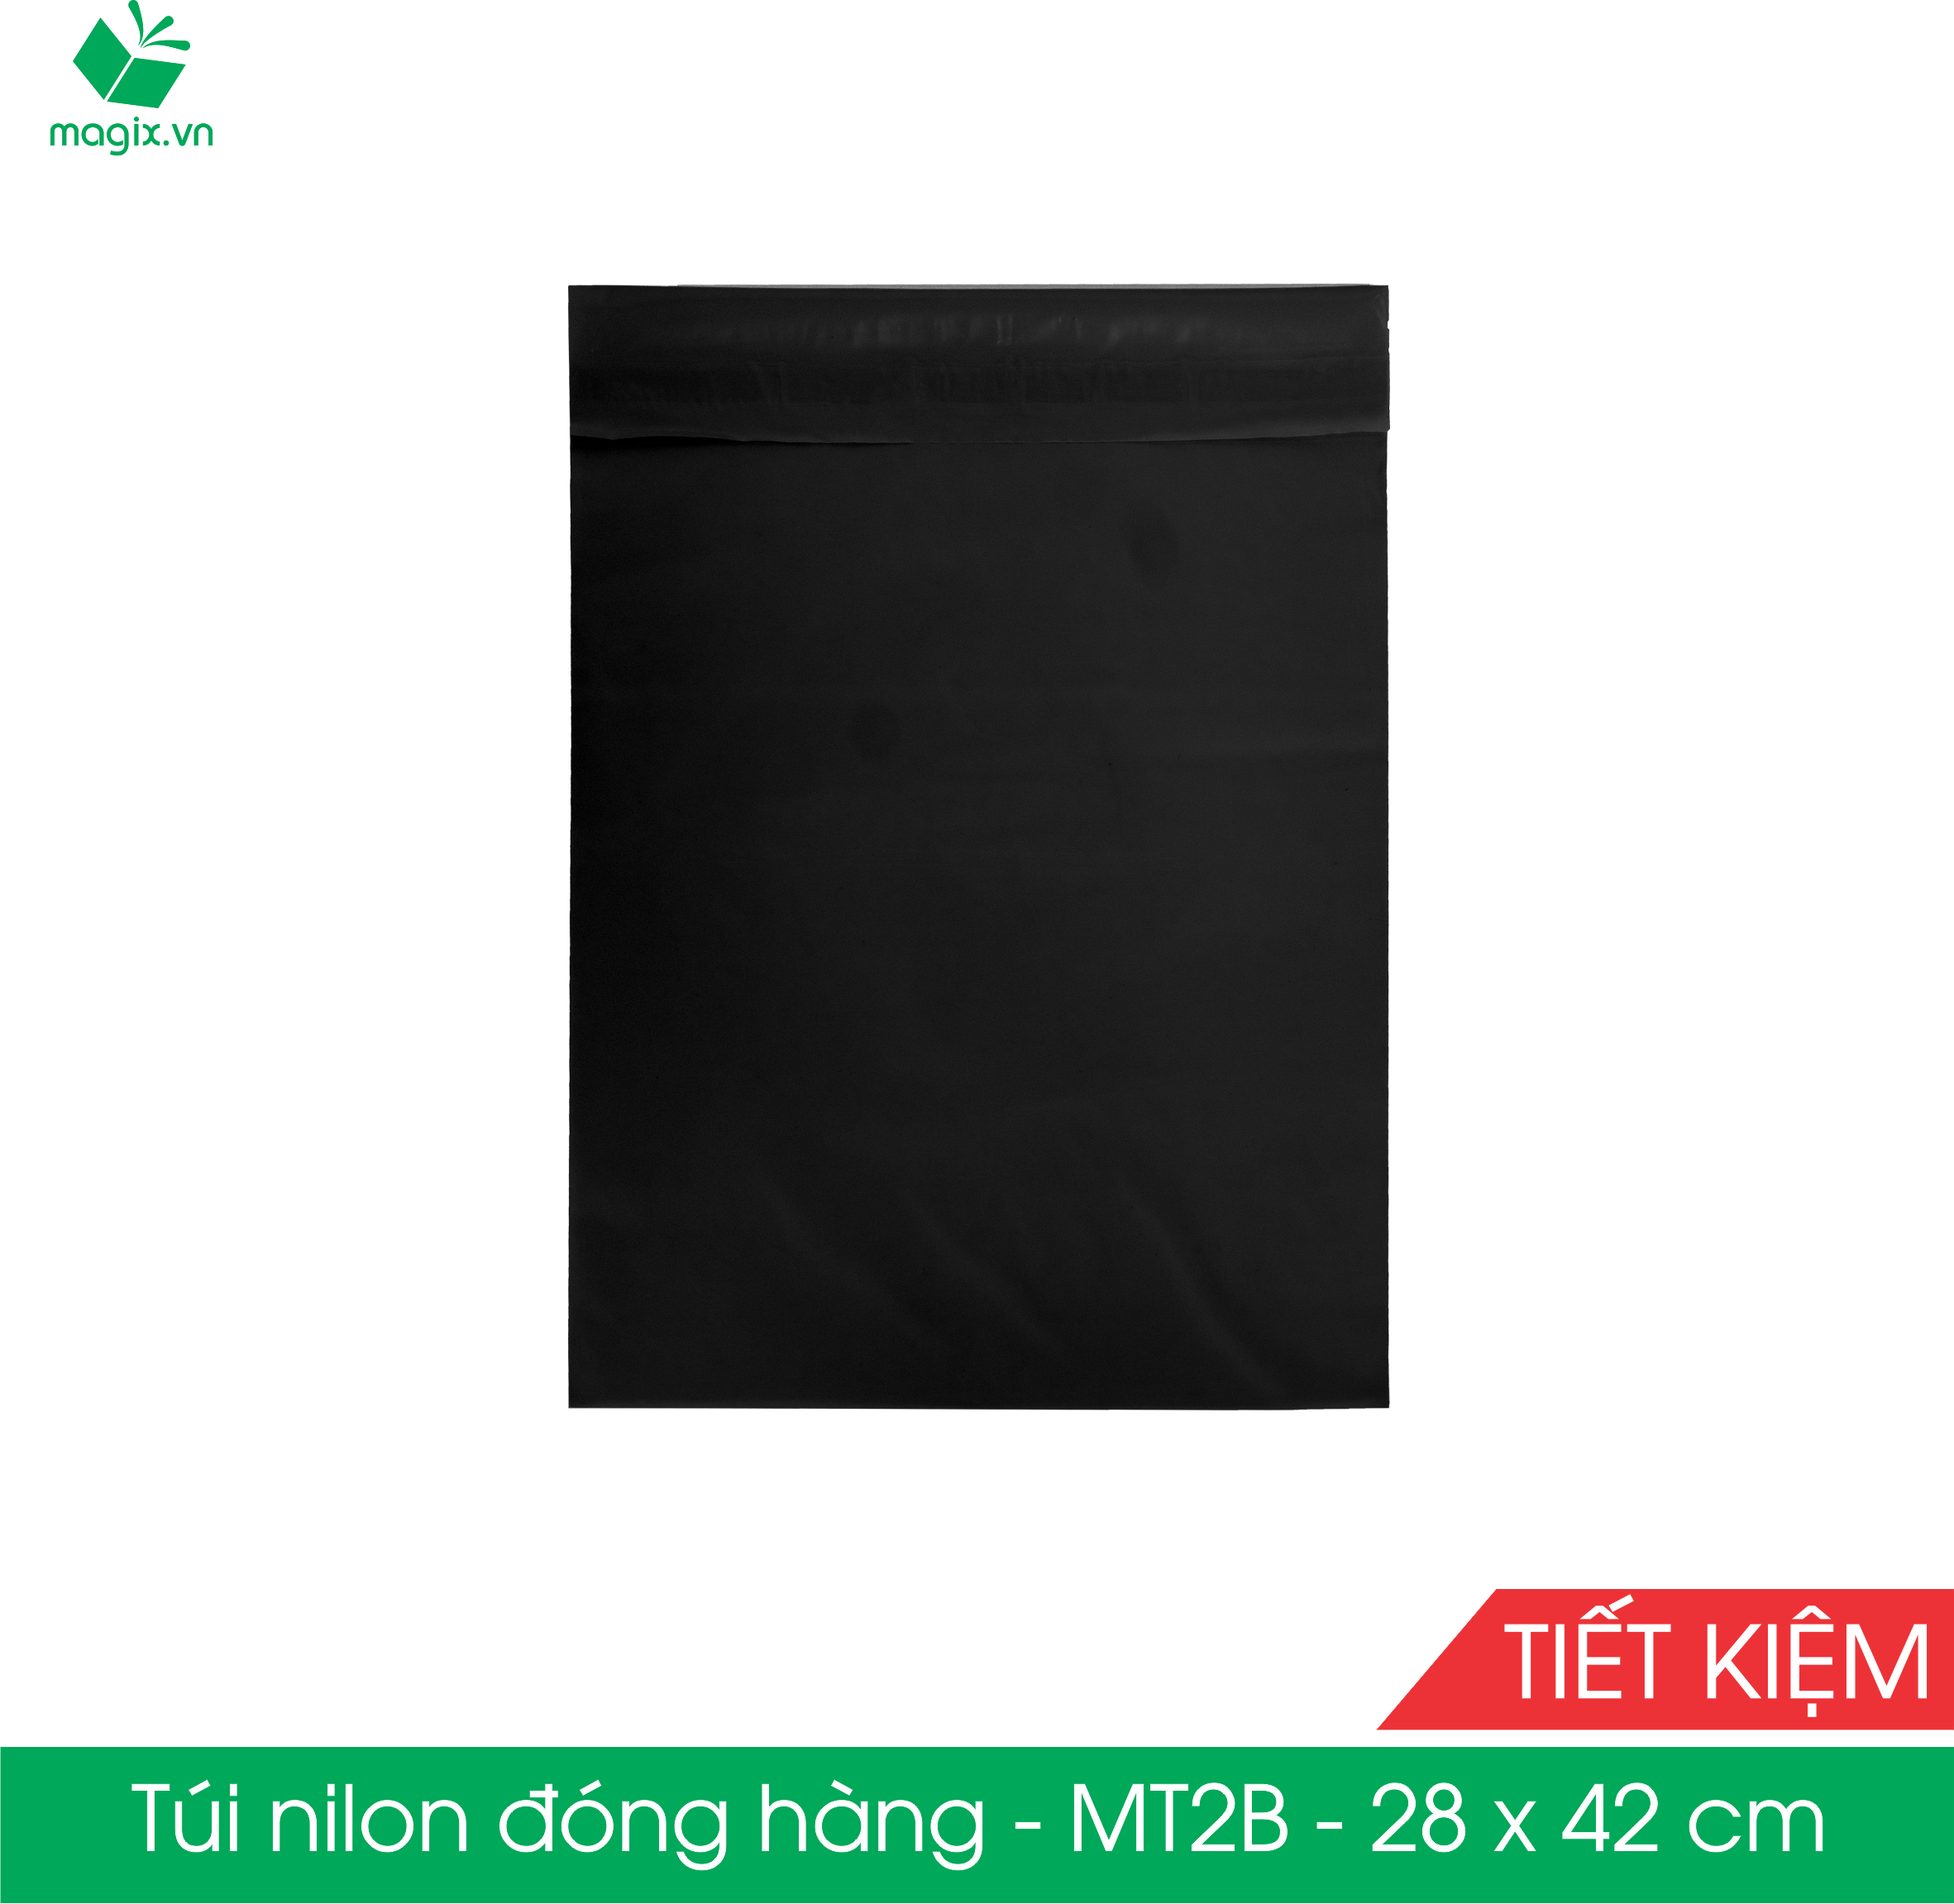 MT2B - 28x42 cm - Túi nilon TIẾT KIỆM gói hàng - 100 túi niêm phong đóng hàng màu ĐEN